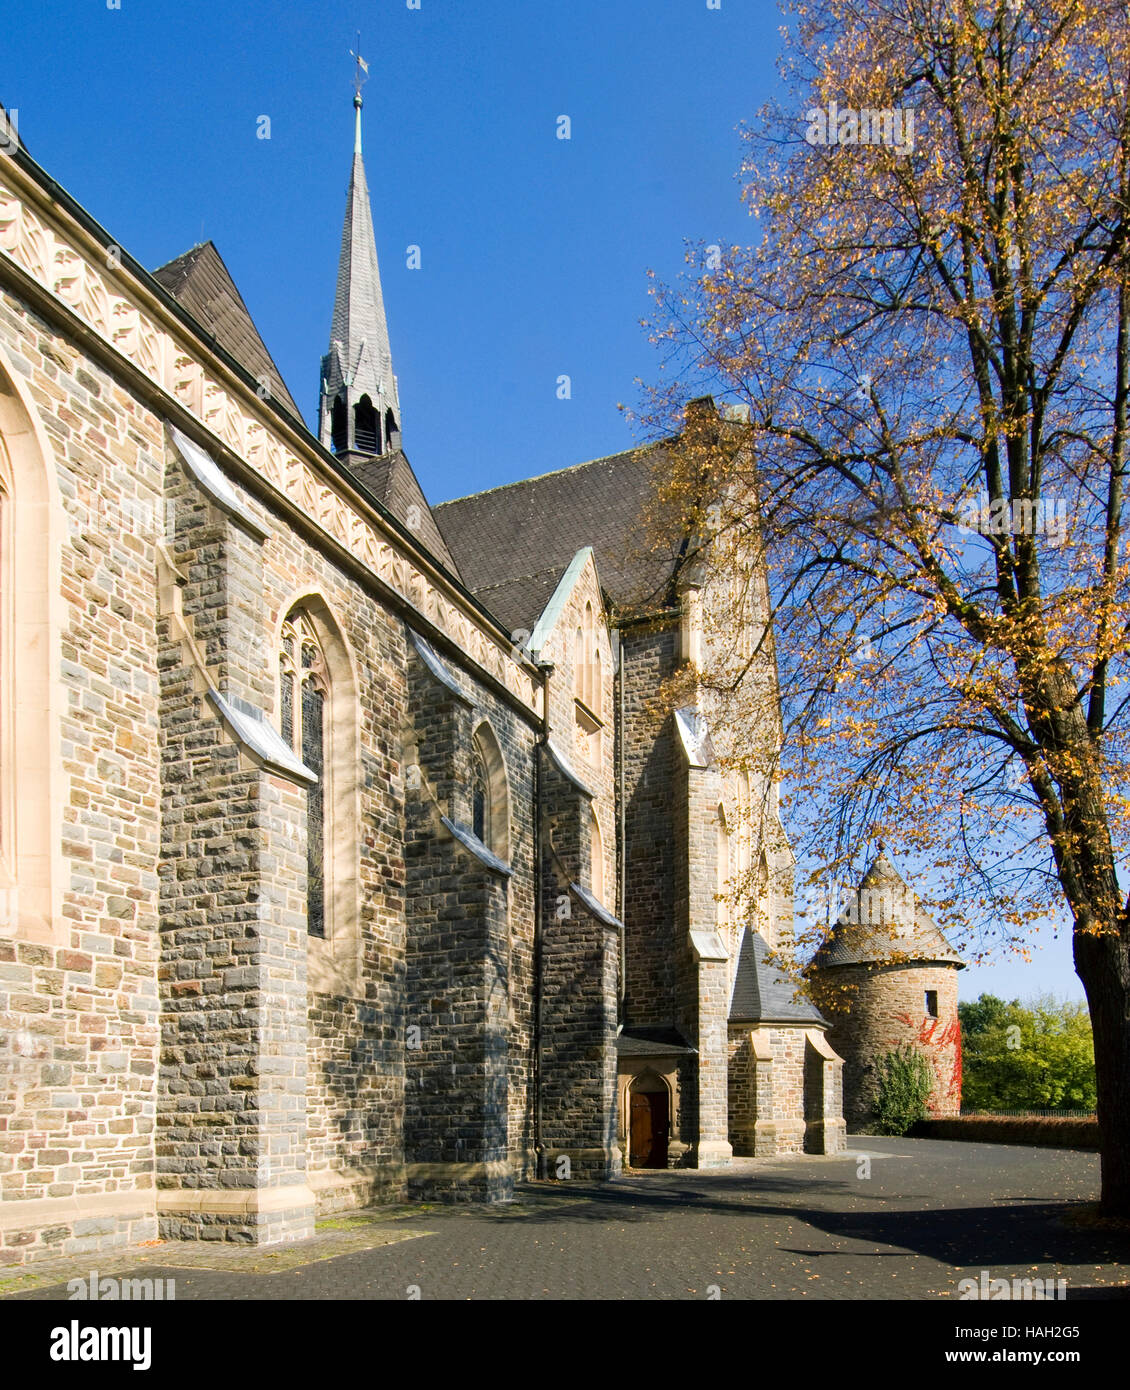 BRD, Nordrhein-Westfalen, Olpe, neugotische Martinuskirche mit Hexenturm, Stock Photo